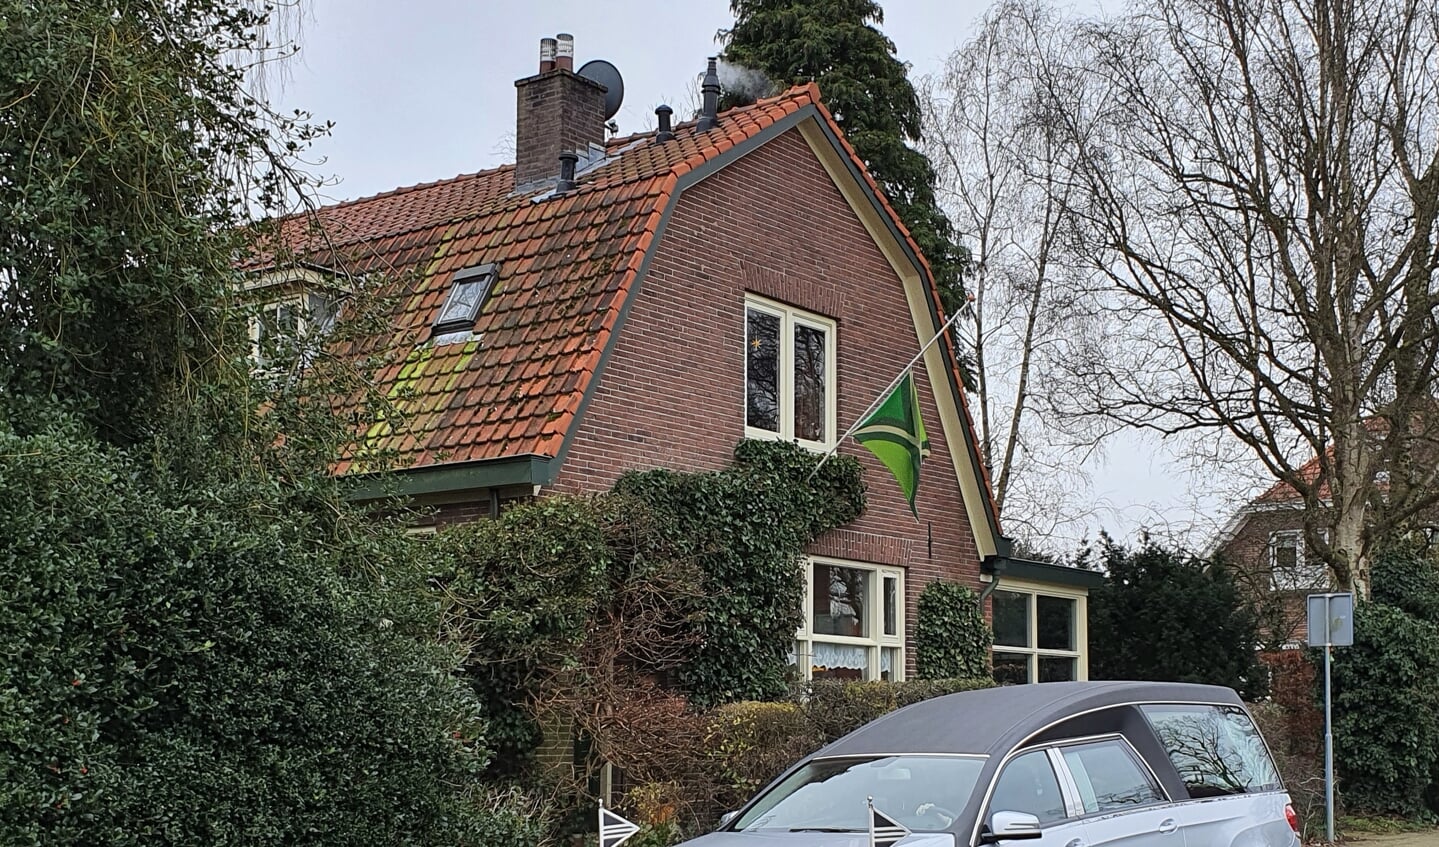 De Achterhoekse vlag hangt halfstok aan het huis van de overleden meester Chris te Winkel. Foto: Alice Rouwhorst